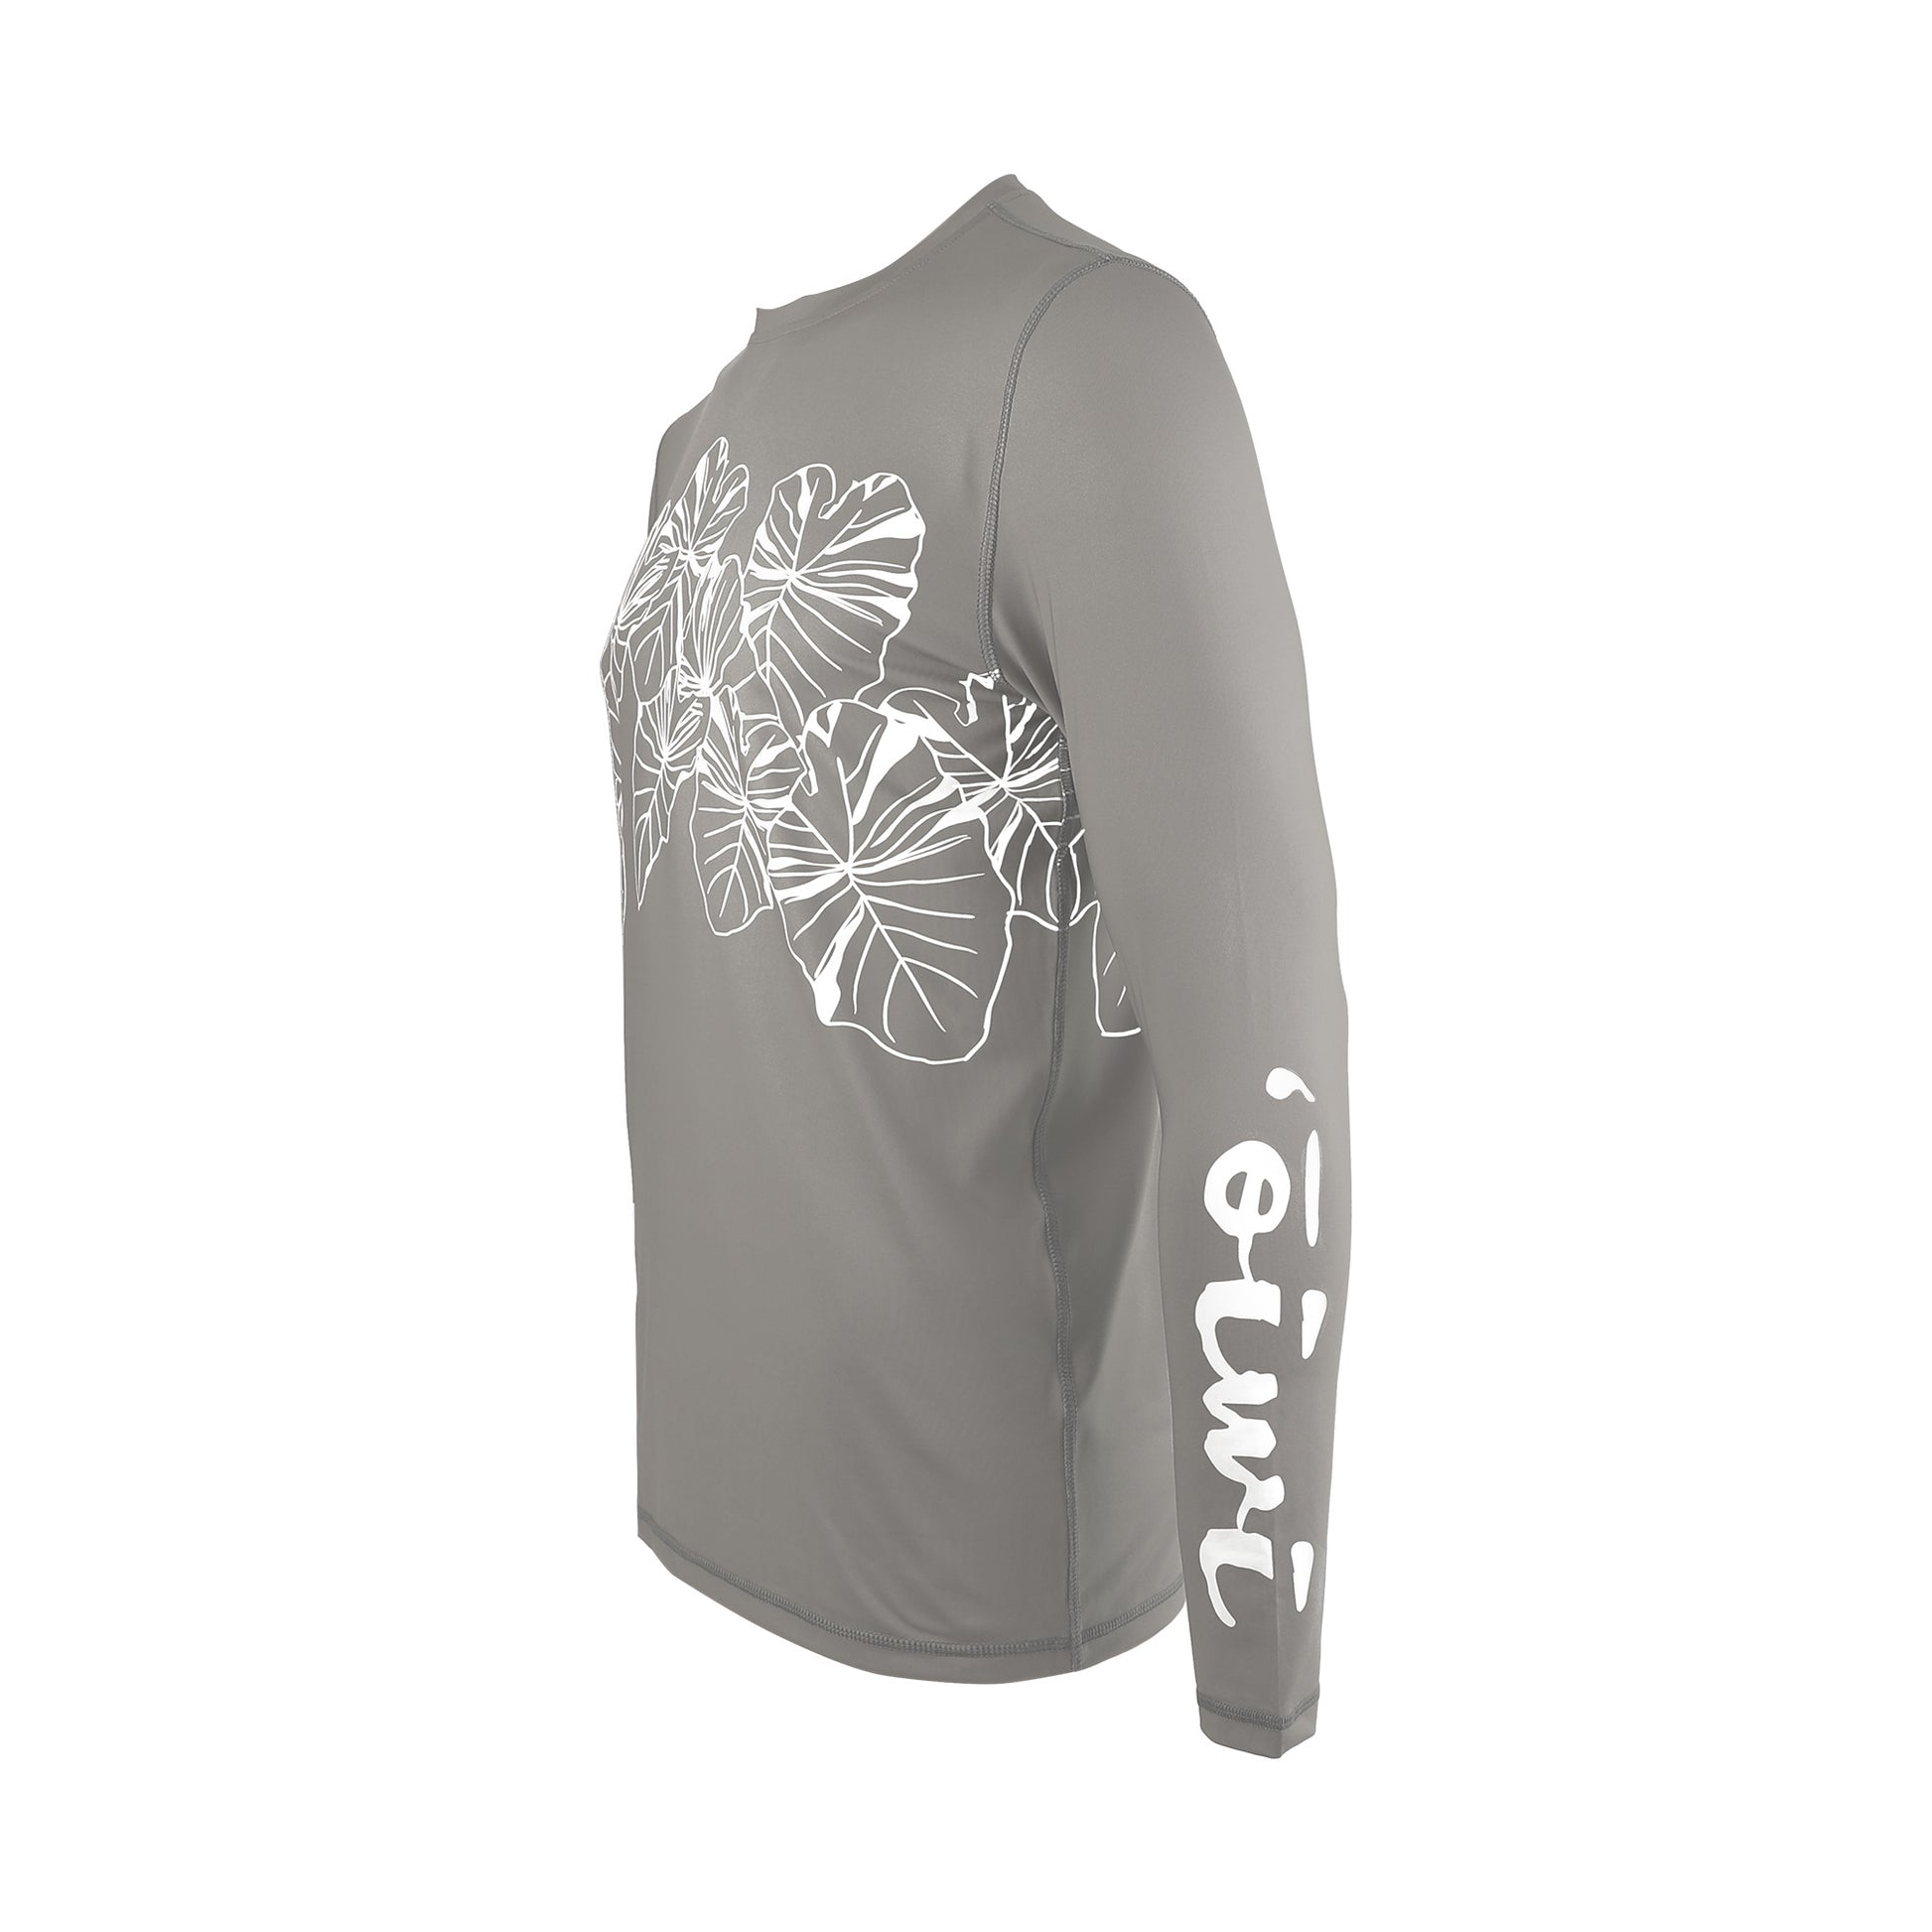 Kalo Organic Long Sleeve UPF 30 Shirt in Charcoal - Oiwi